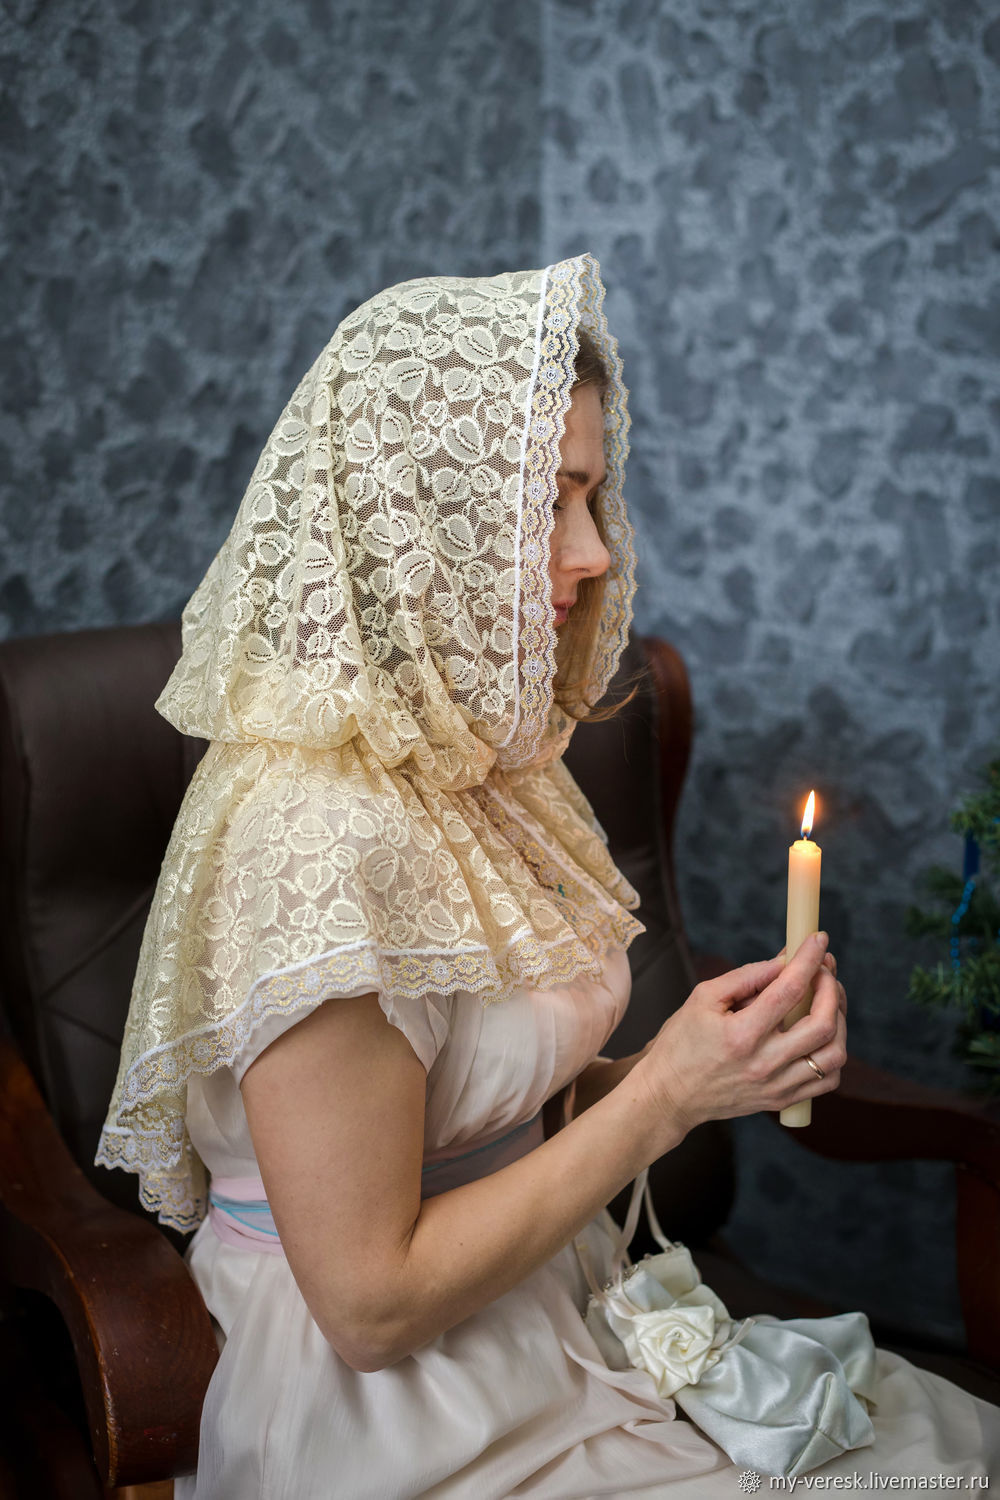 Почему с покрытой головой. Православная девушка. Православные женщины в платках. Православная девушка в платке. Красивые платки для церкви.